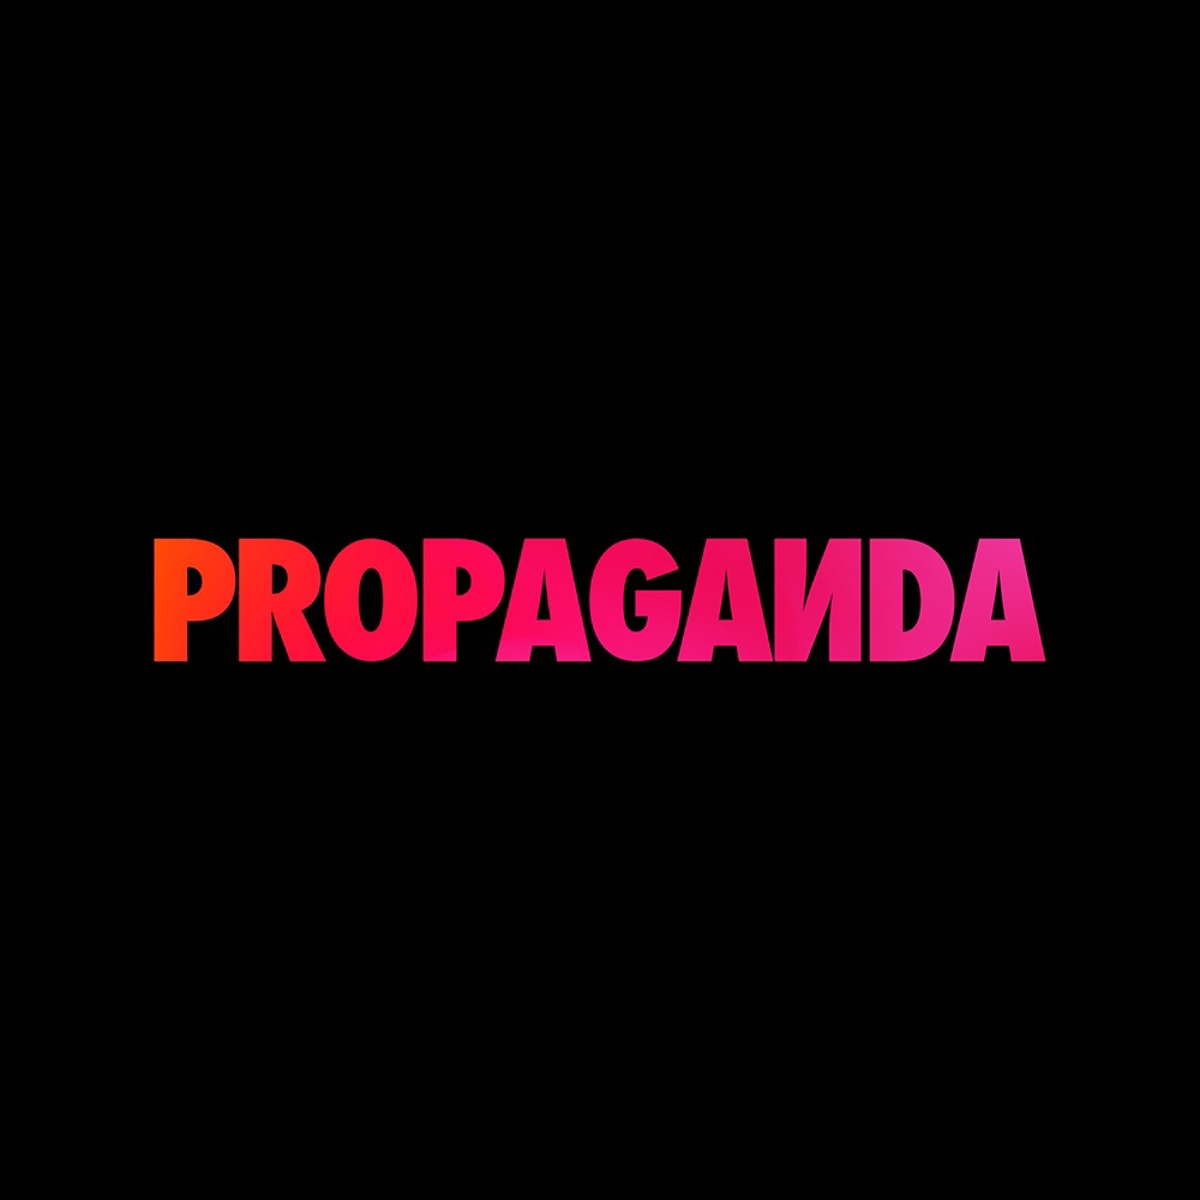 Propaganda 20240216 Square 1000Px